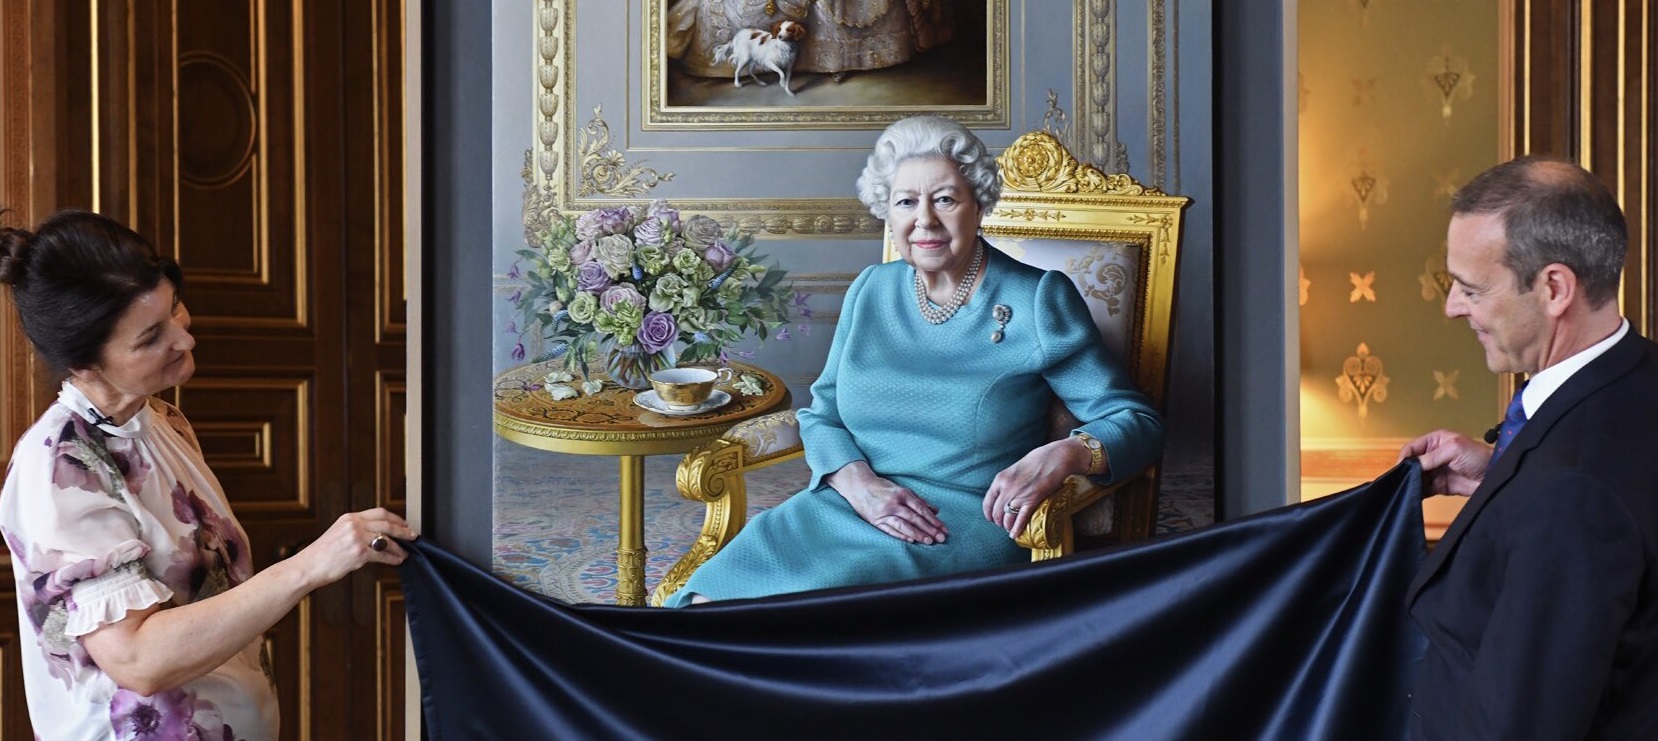 Estrenan nuevo retrato oficial de Isabel II